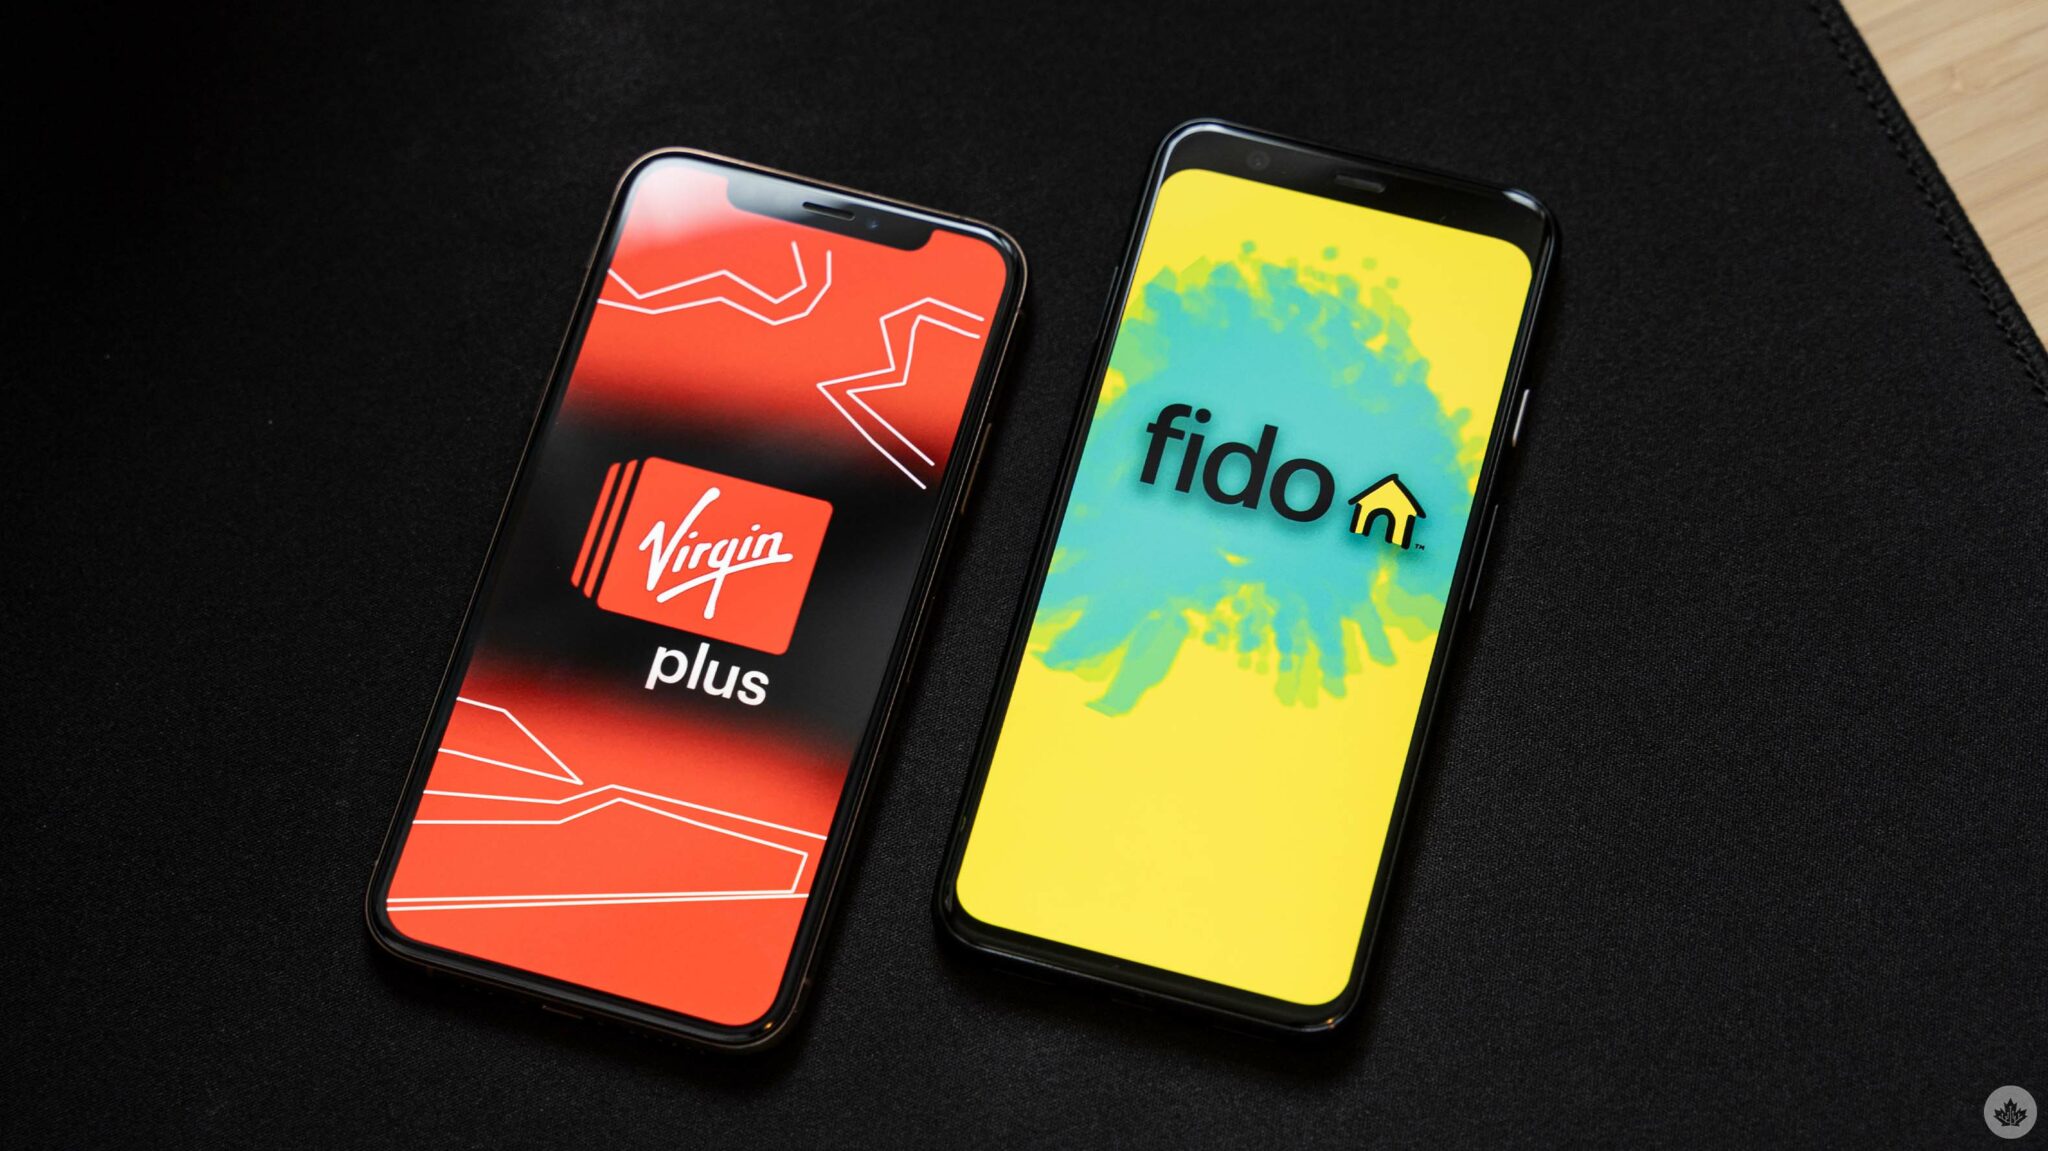 Fido, Virgin Plus match Koodo’s $50/40GB plan